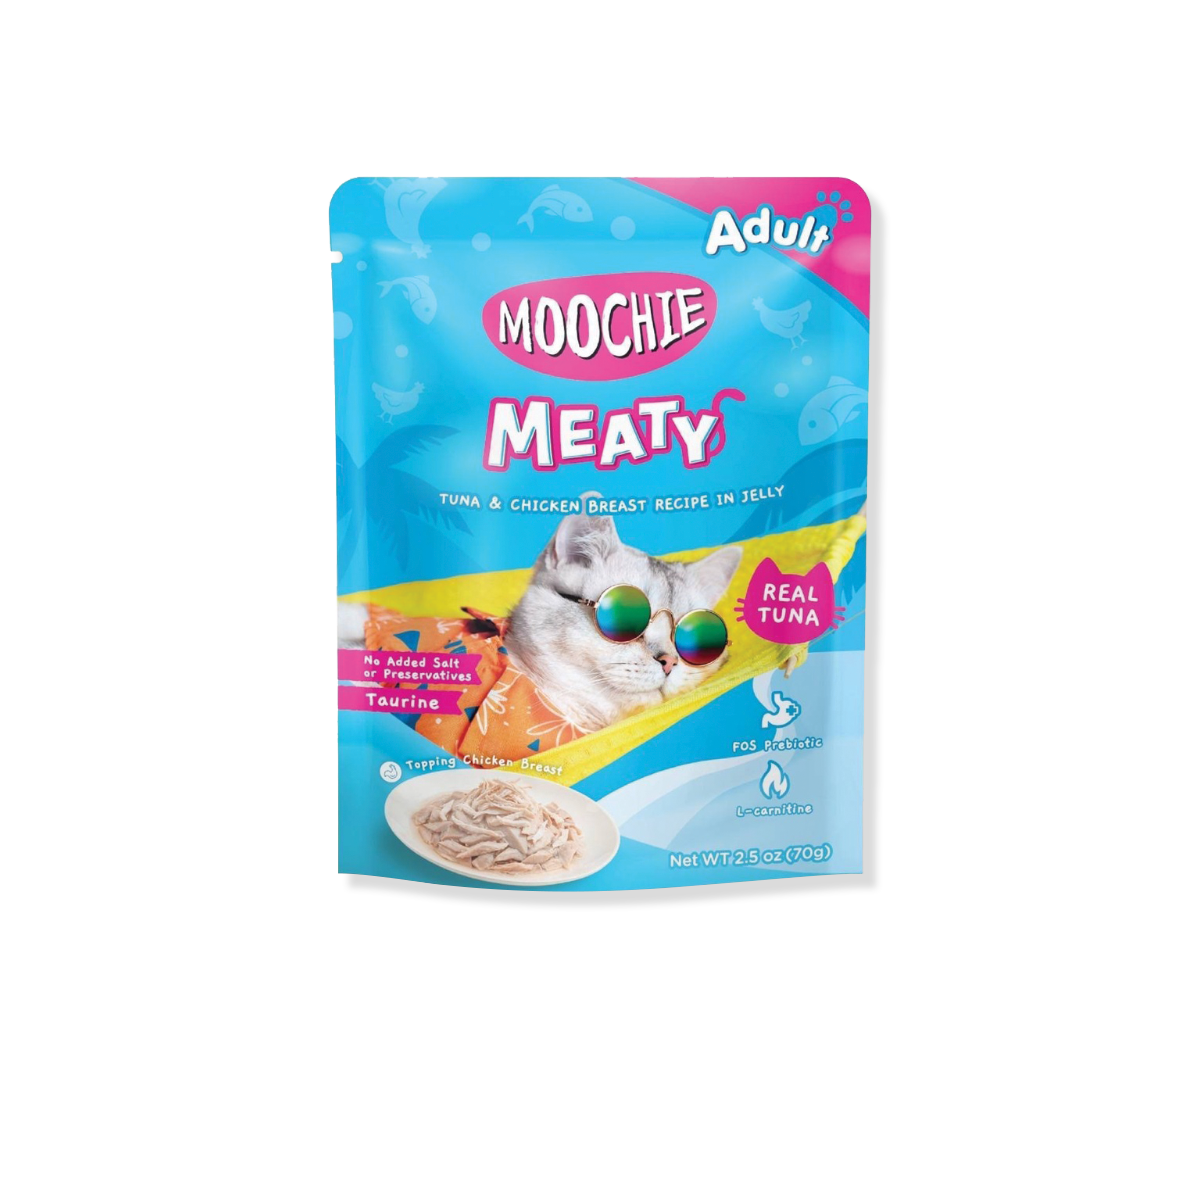 MOOCHIE meaty Tuna & Chicken breast recipe in jelly Adult มูชี่ มีทตี้ อาหารเปียกแมว รสทูน่าและอกไก่ ขนาด 70 กรัม (12 ซอง)